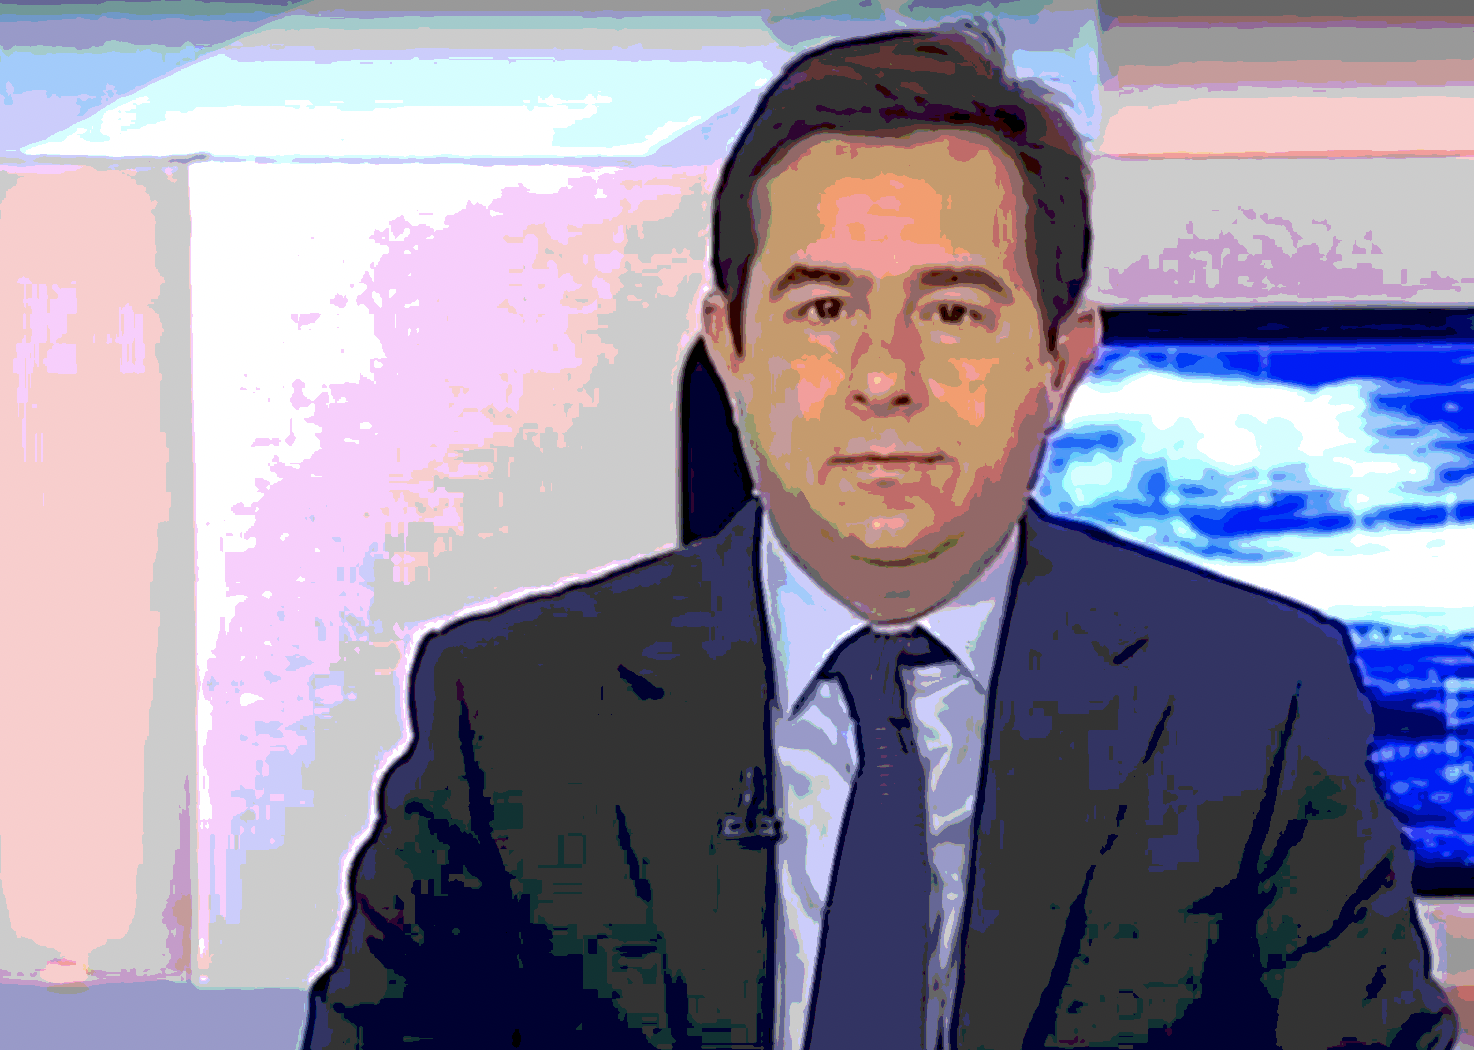 Ο κ.Μηταράκης τώρα μιλά για «πολλά ερωτηματικά για τον Έβρο» και απειλεί δημοσιογράφο